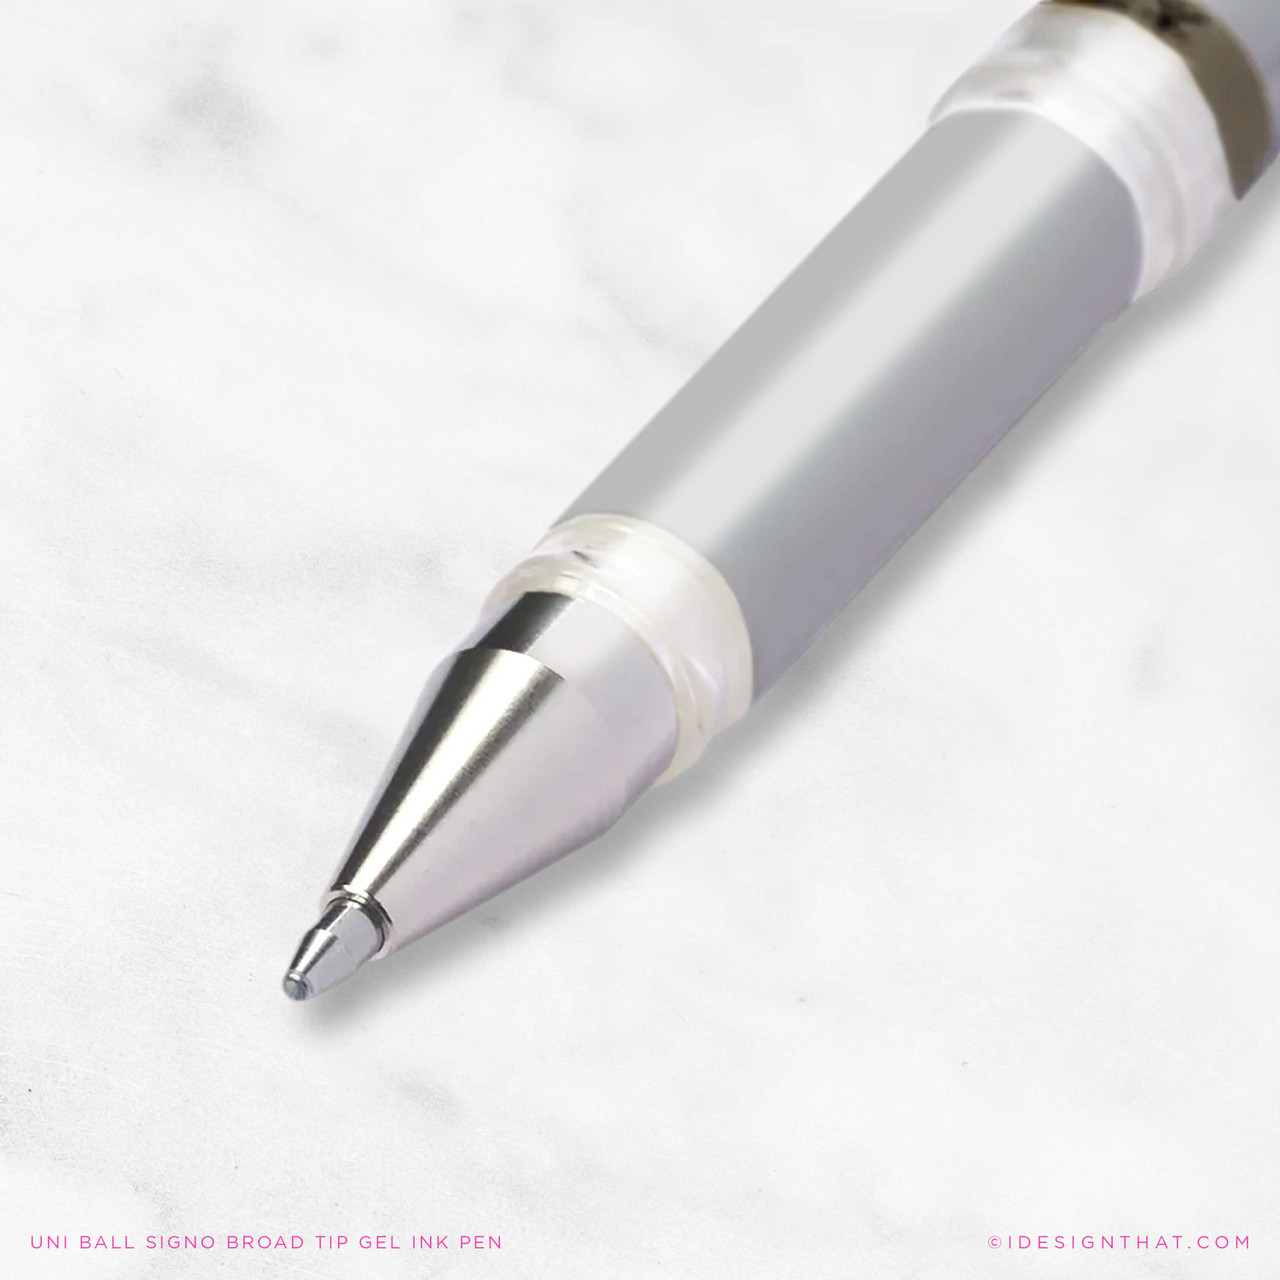 Silver Ink Pen